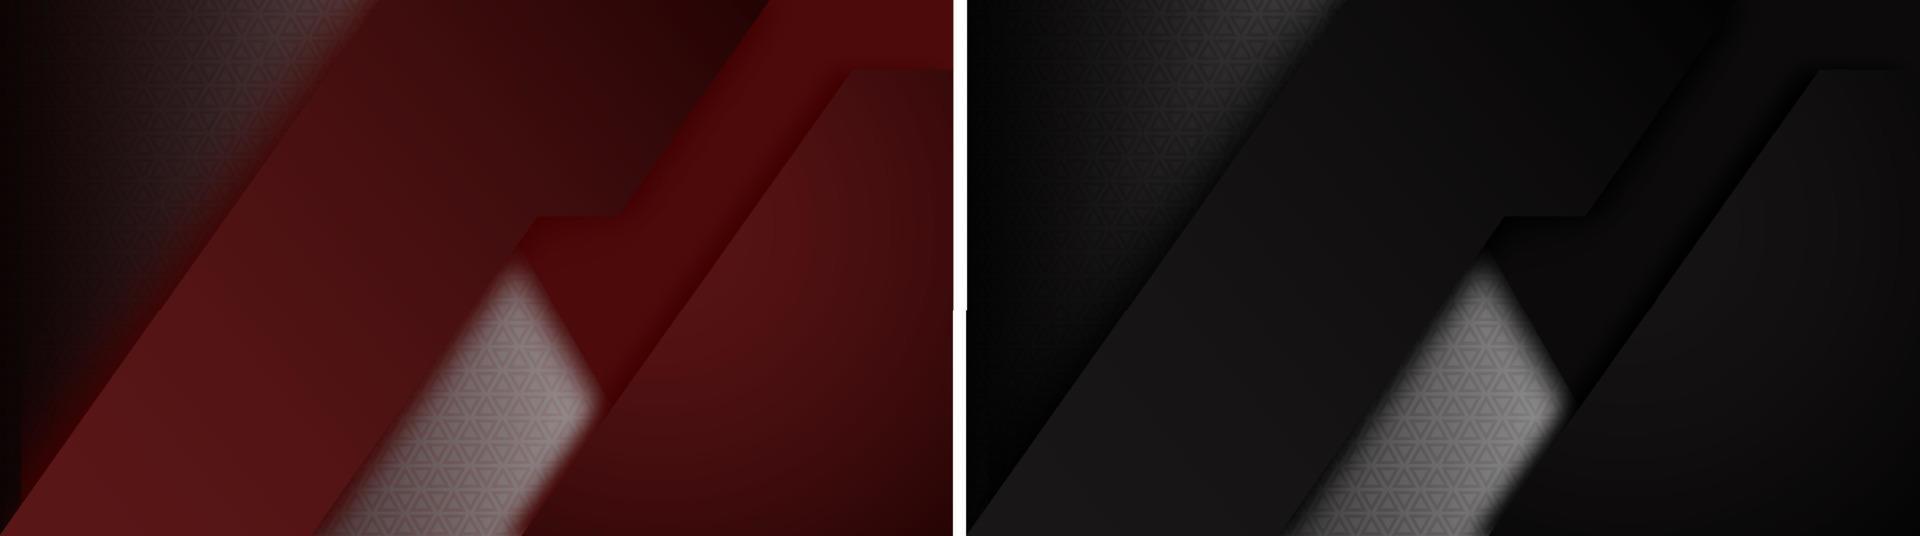 minimalistische dunkle Hintergründe im technologischen Stil mit dreieckigem Carbon-Netz im Rücken. rote und schwarze Farbe für Startbildschirm, Smartphone. Vektor